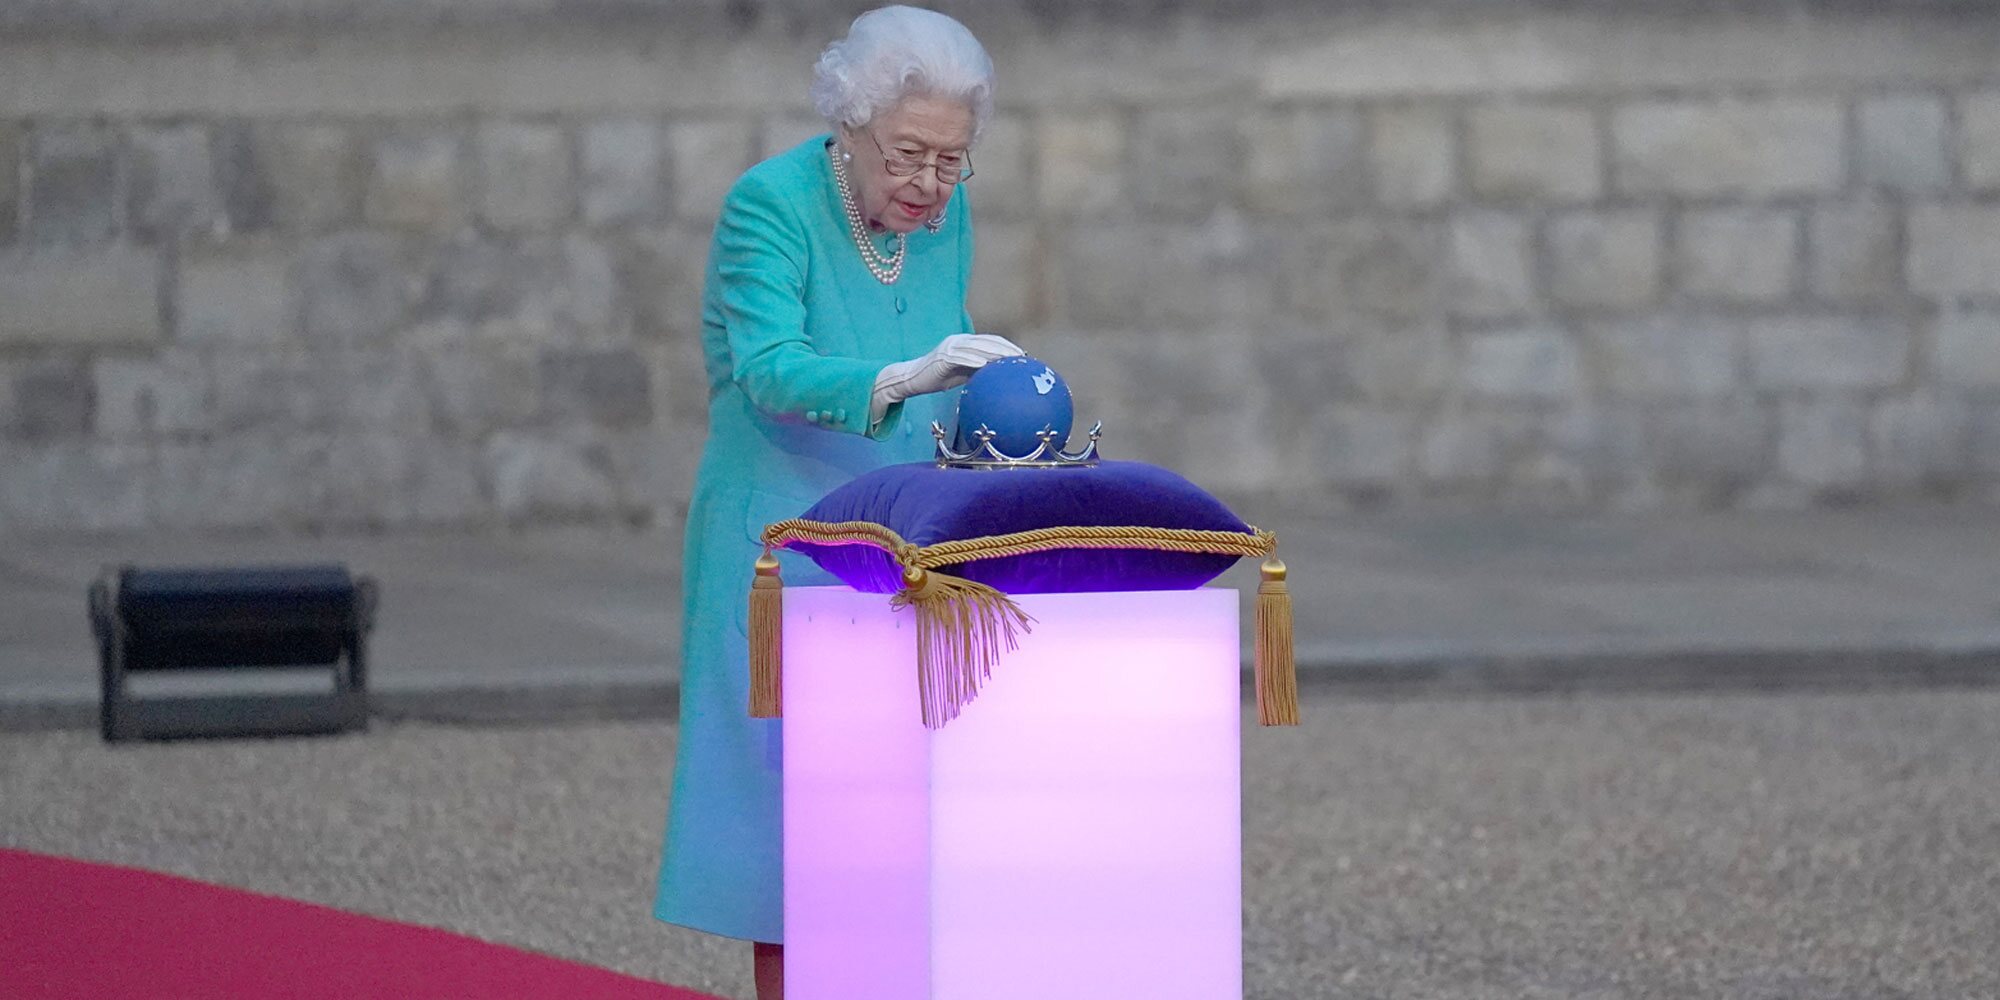 La emoción de la Reina Isabel en el encendido por el Jubileo de Platino tras un intenso Trooping the Colour y una cancelación